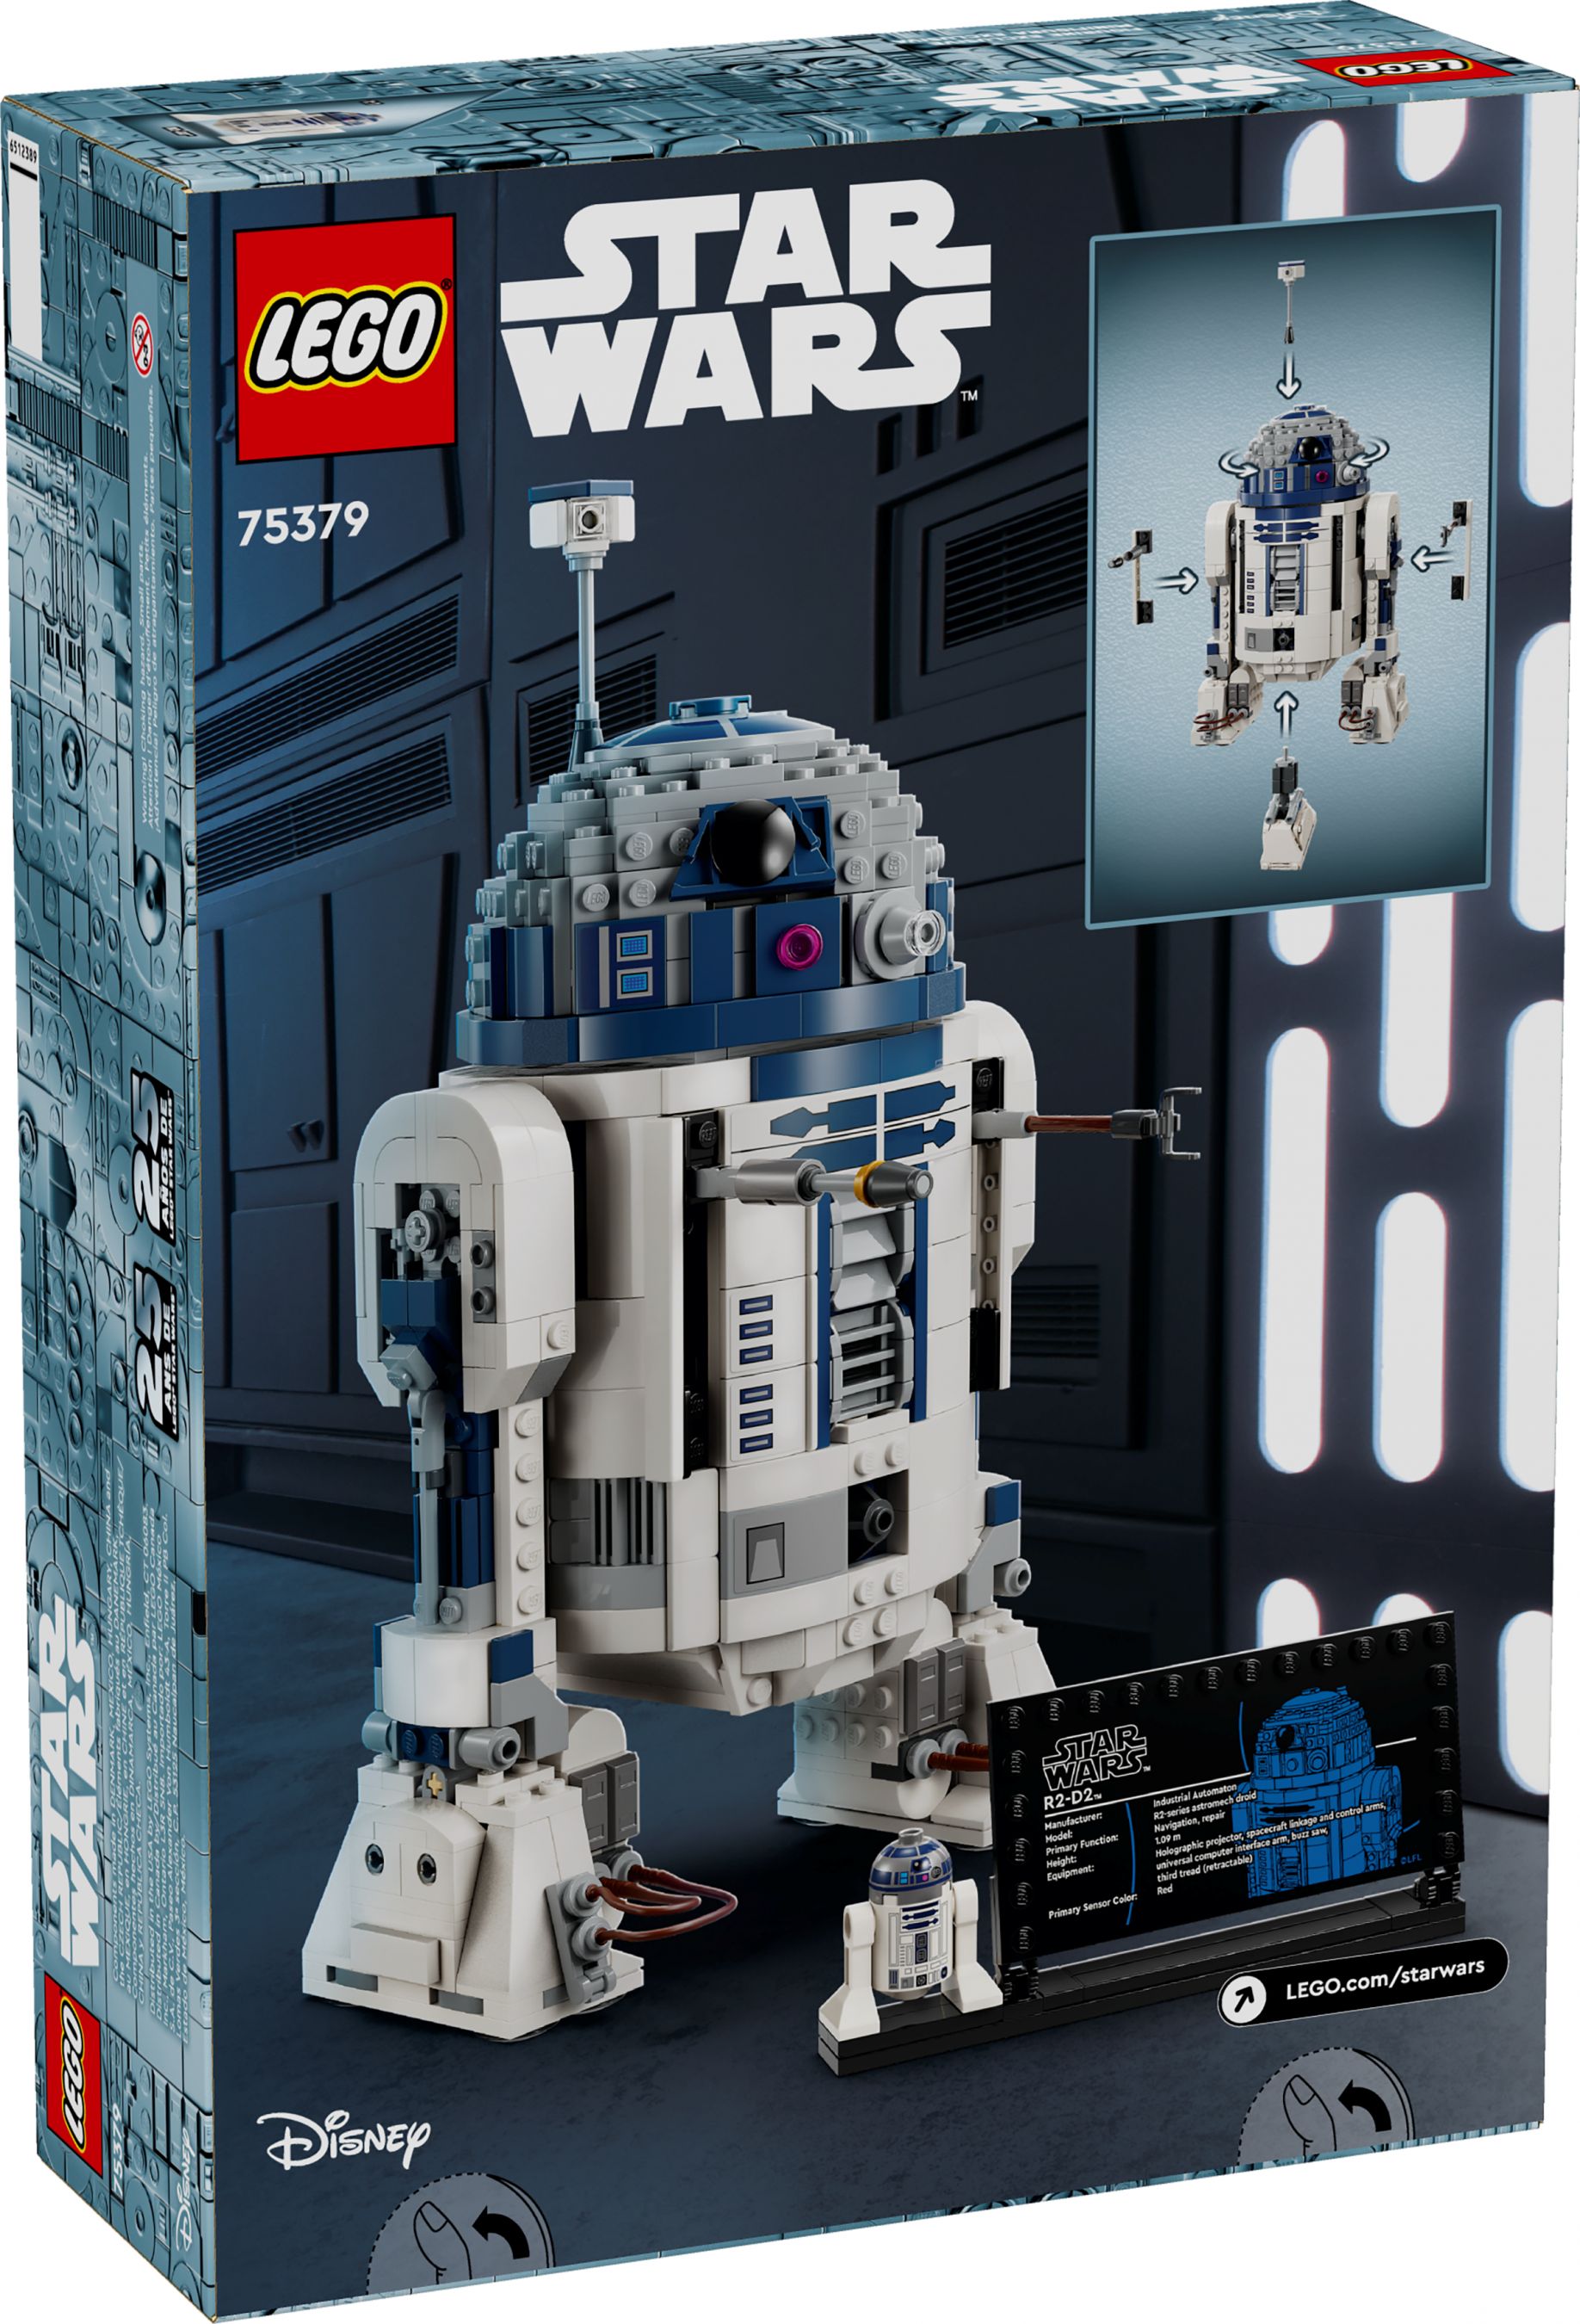 LEGO Star Wars 75379 R2-D2™ LEGO_75379_alt6.jpg